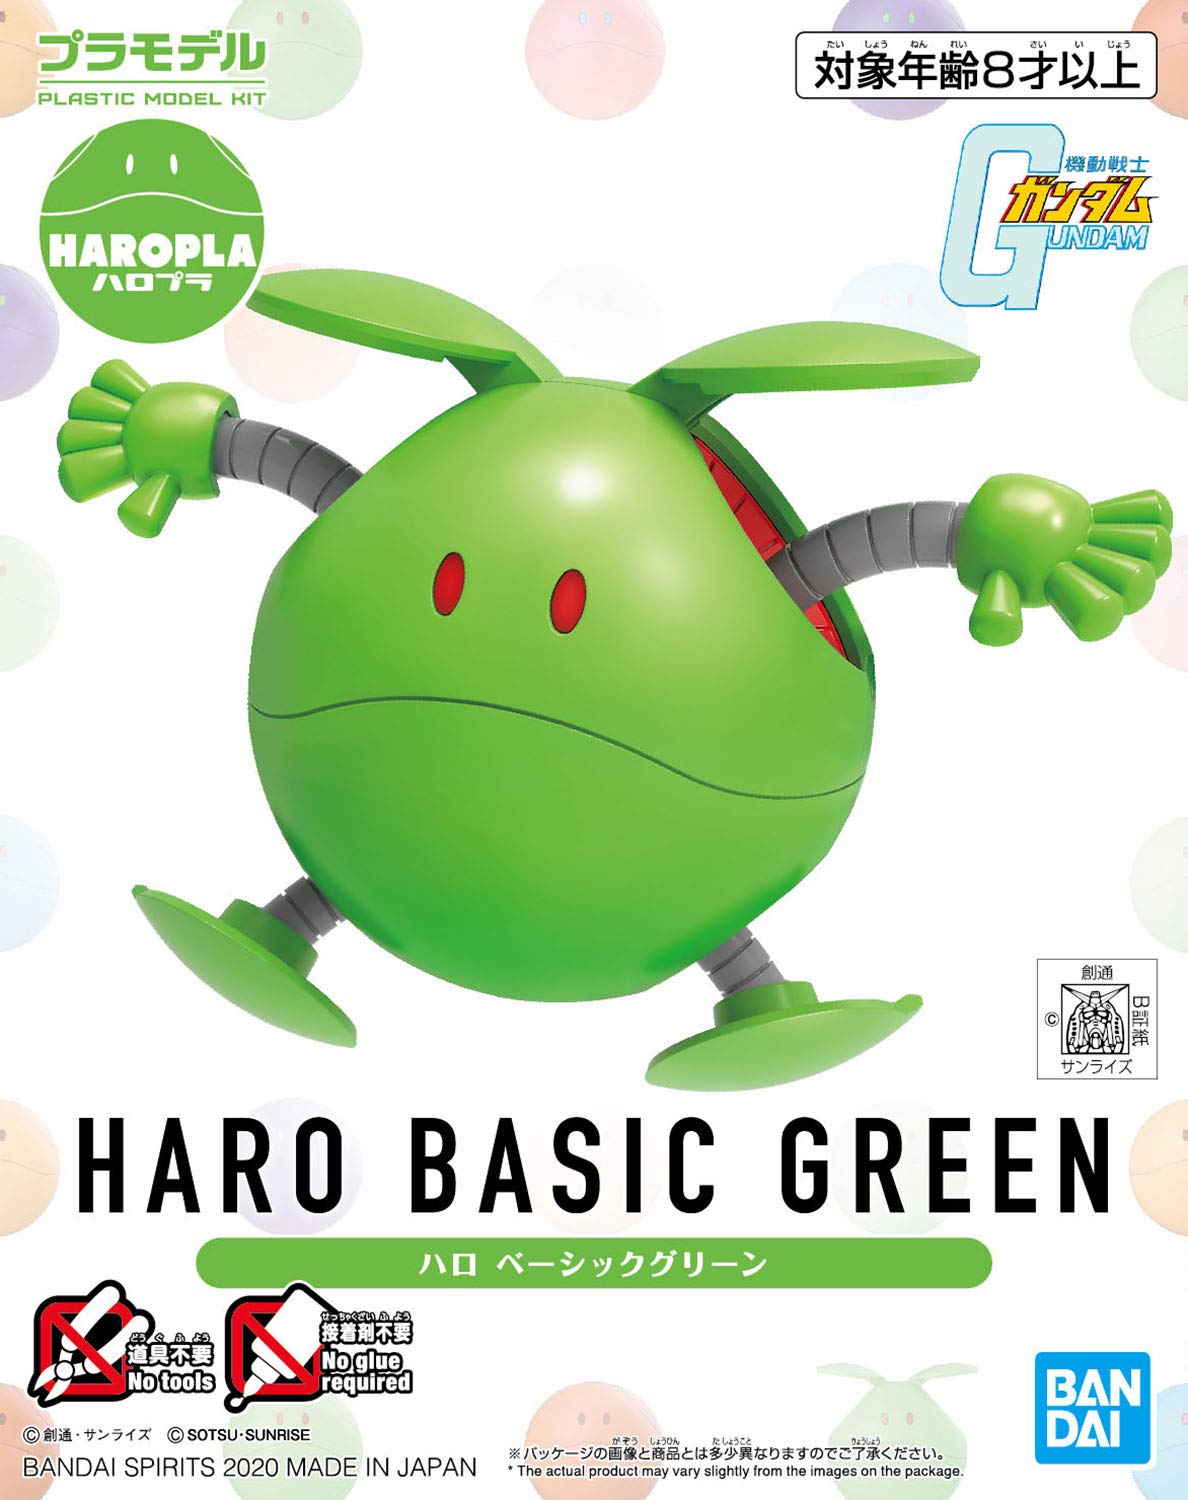 Mobile Suit Gundam #12 HARO Basic Green, Bandai Spirits HARO-Pla